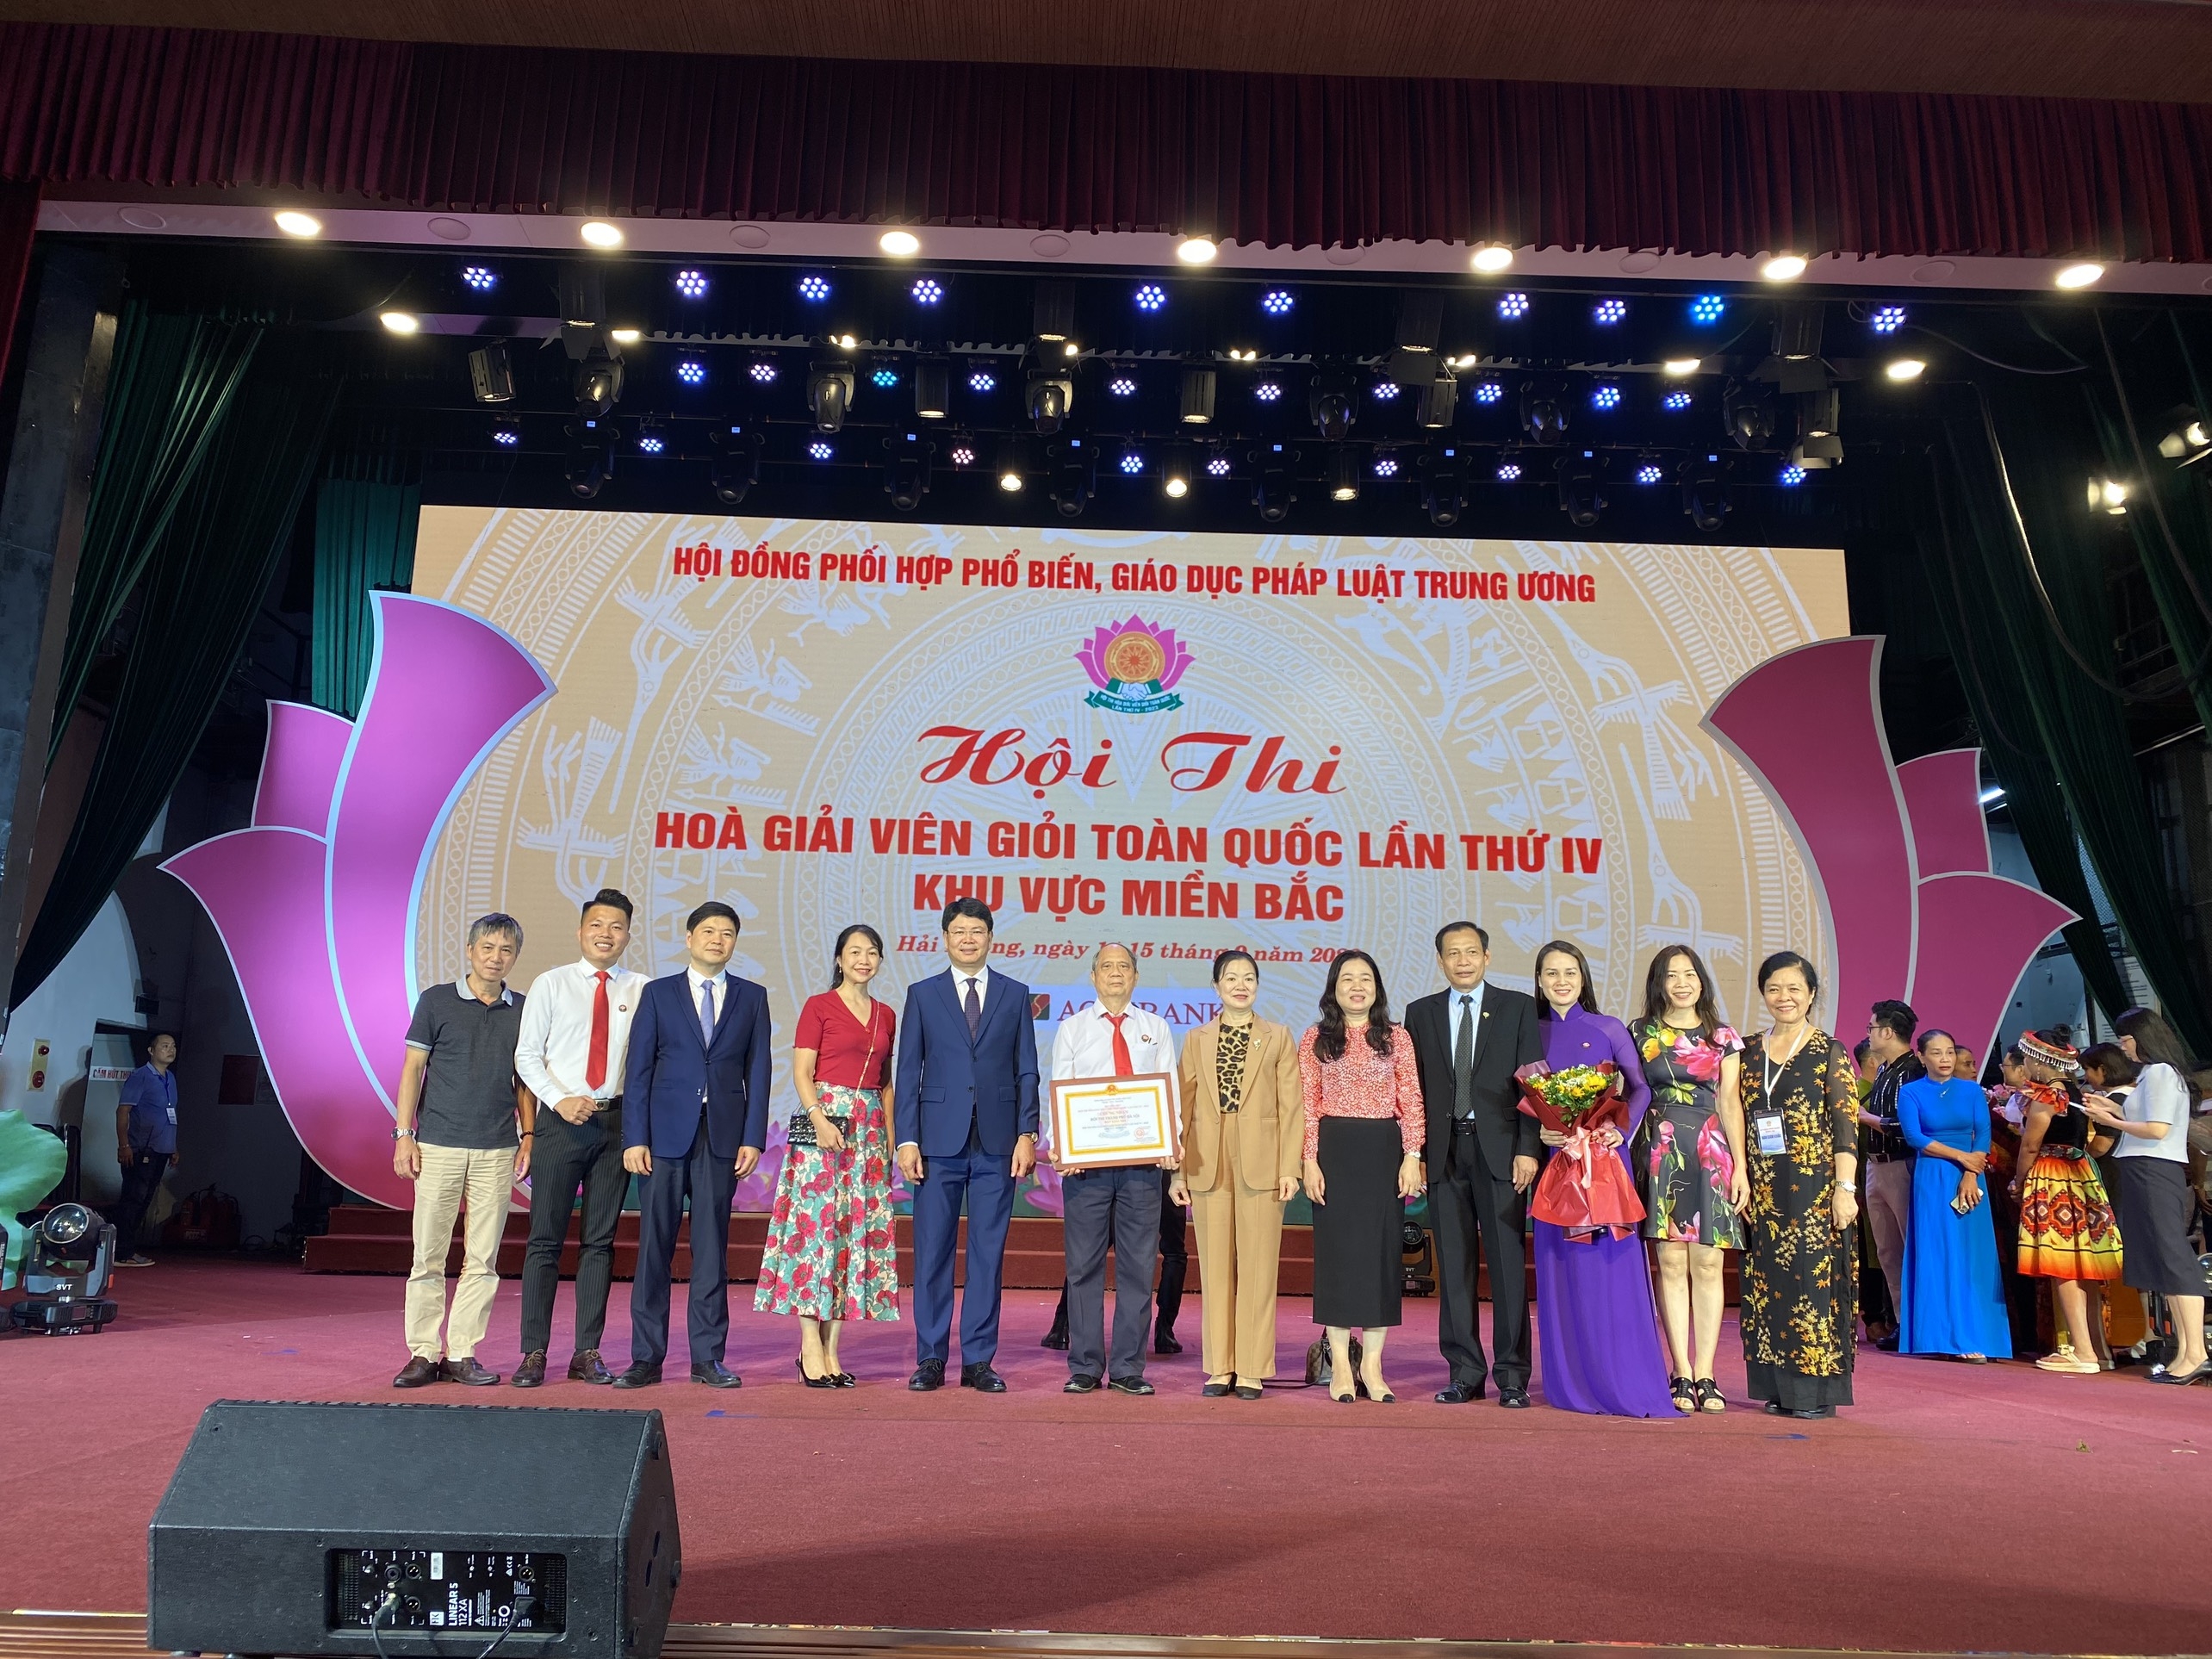 Hà Nội đạt giải Nhì Hội thi Hòa giải viên giỏi toàn quốc lần thứ IV, khu vực miền Bắc